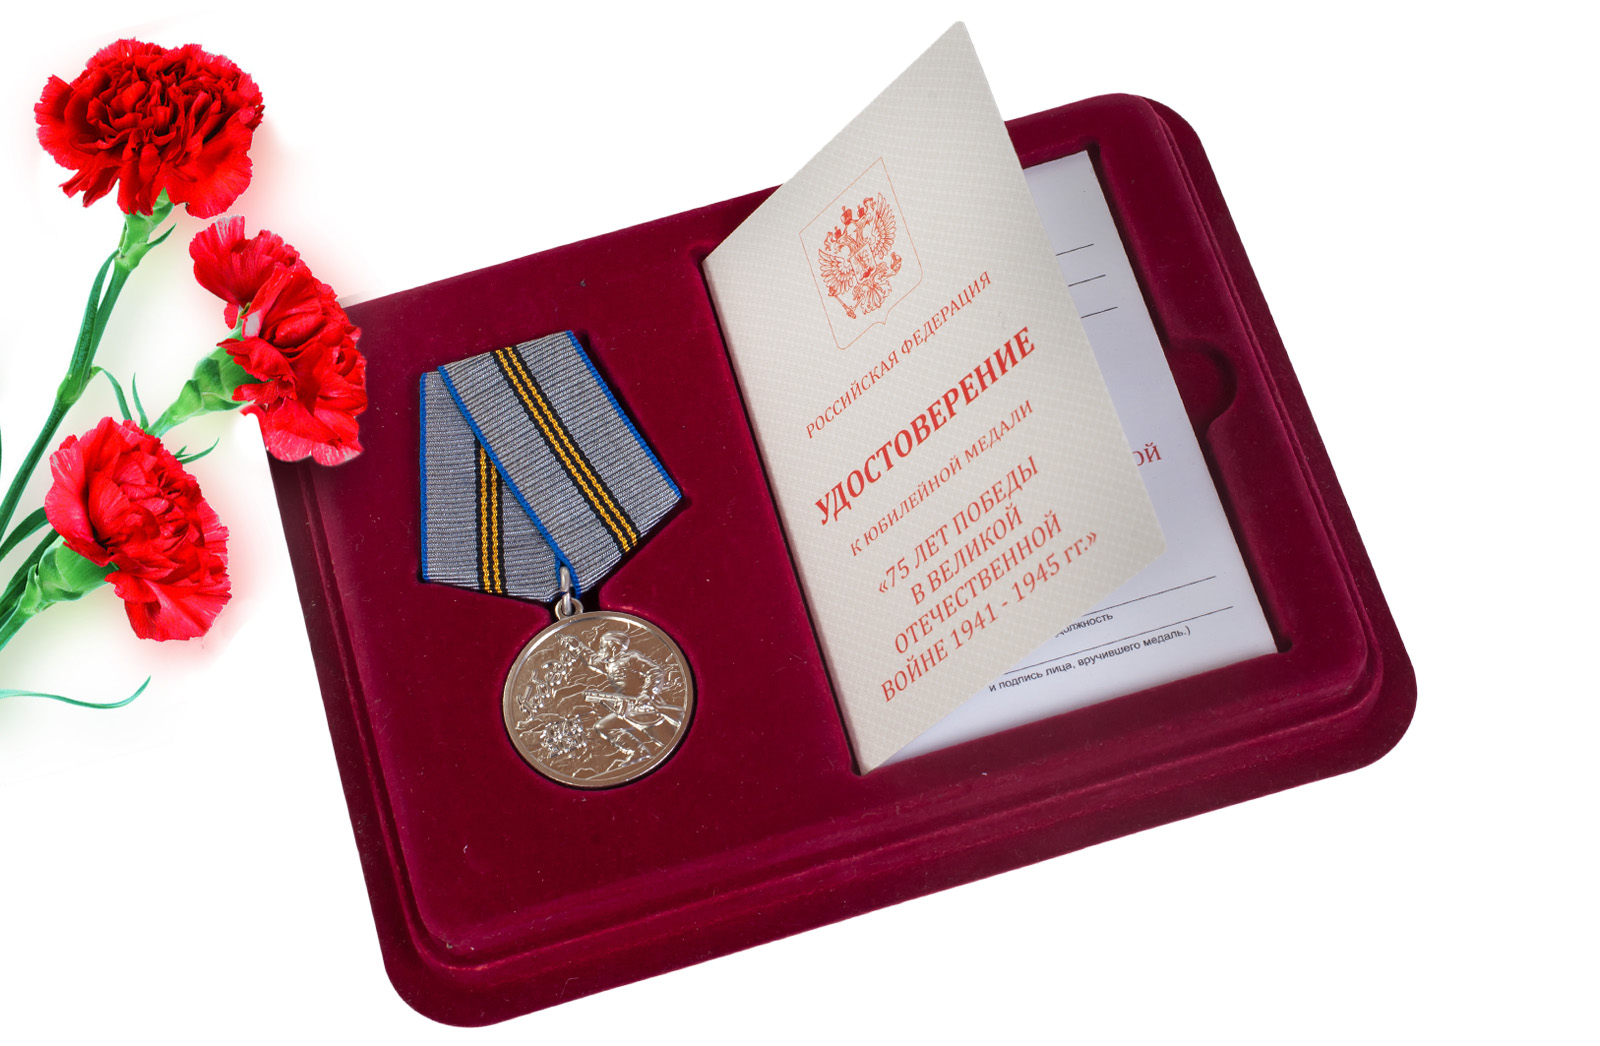 Купить памятную медаль 75 лет Победы в ВОВ 1941-1945 гг. с доставкой